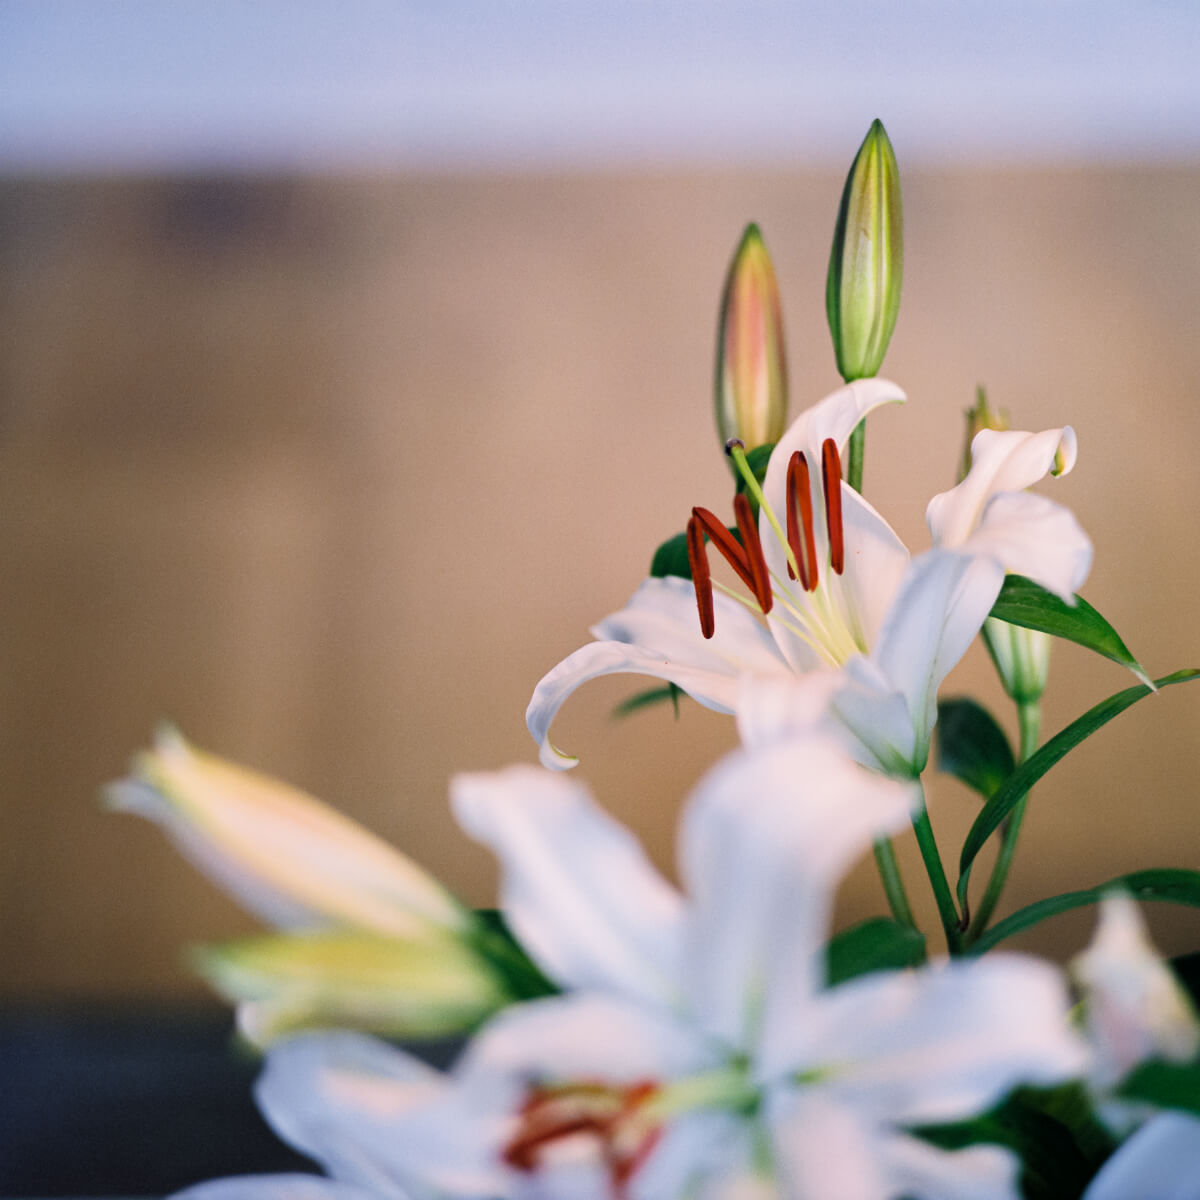 Michael Elliott - Still life lillies #2 - Kiev 60 + Carl Zeiss Jena Sonnar 180mm f:2.8 + Fuji Pro 400H